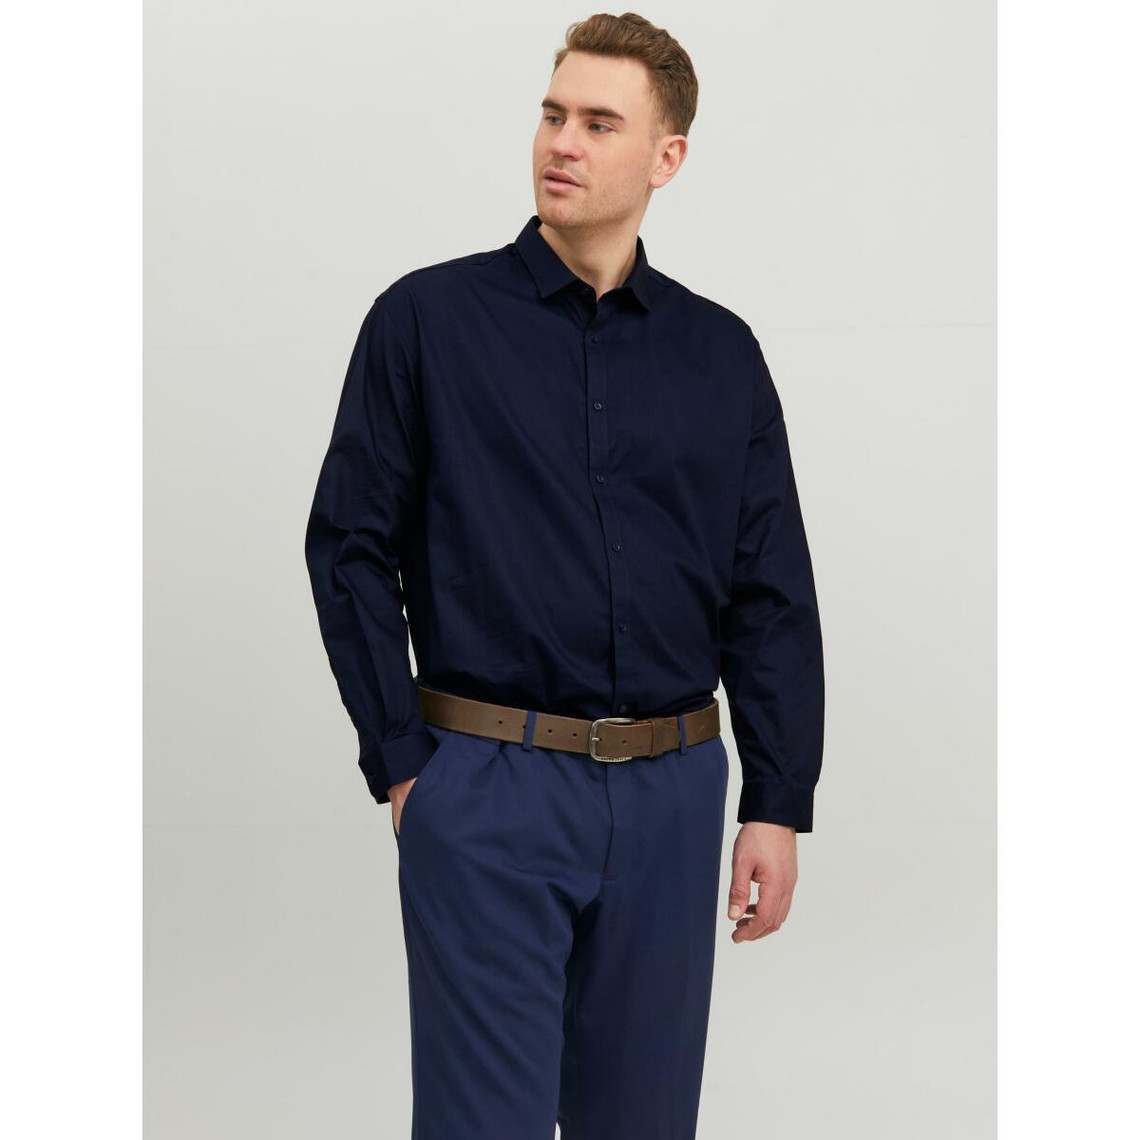 Chemise habillée Loose Fit Col chemise Manches longues Bleu Marine en coton